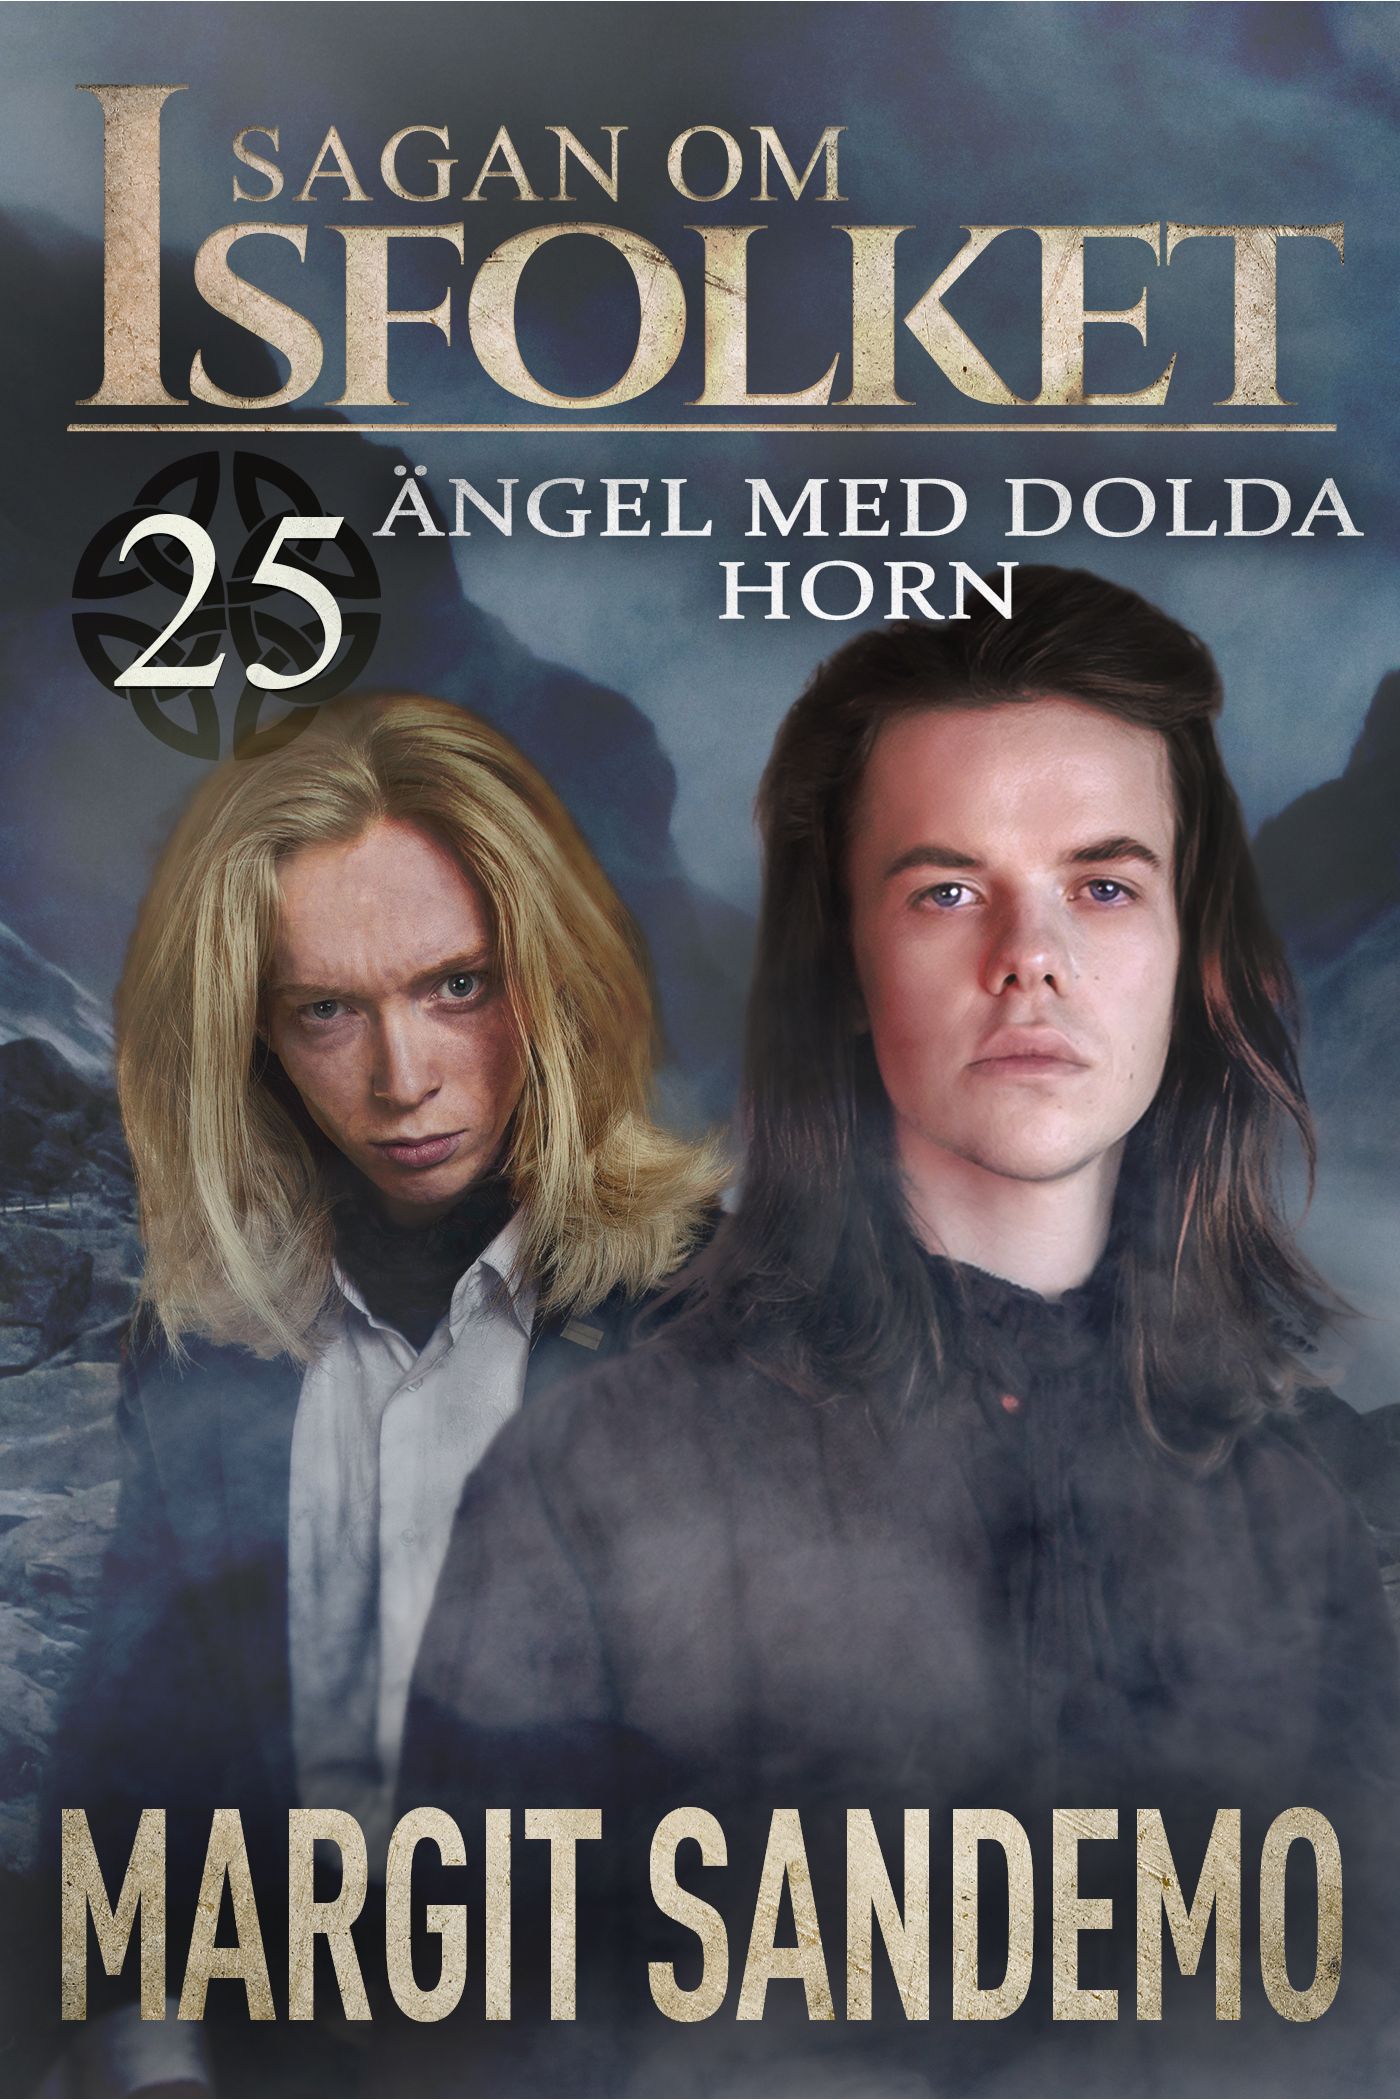 Ängel med dolda horn: Sagan om Isfolket 25, eBook by Margit Sandemo